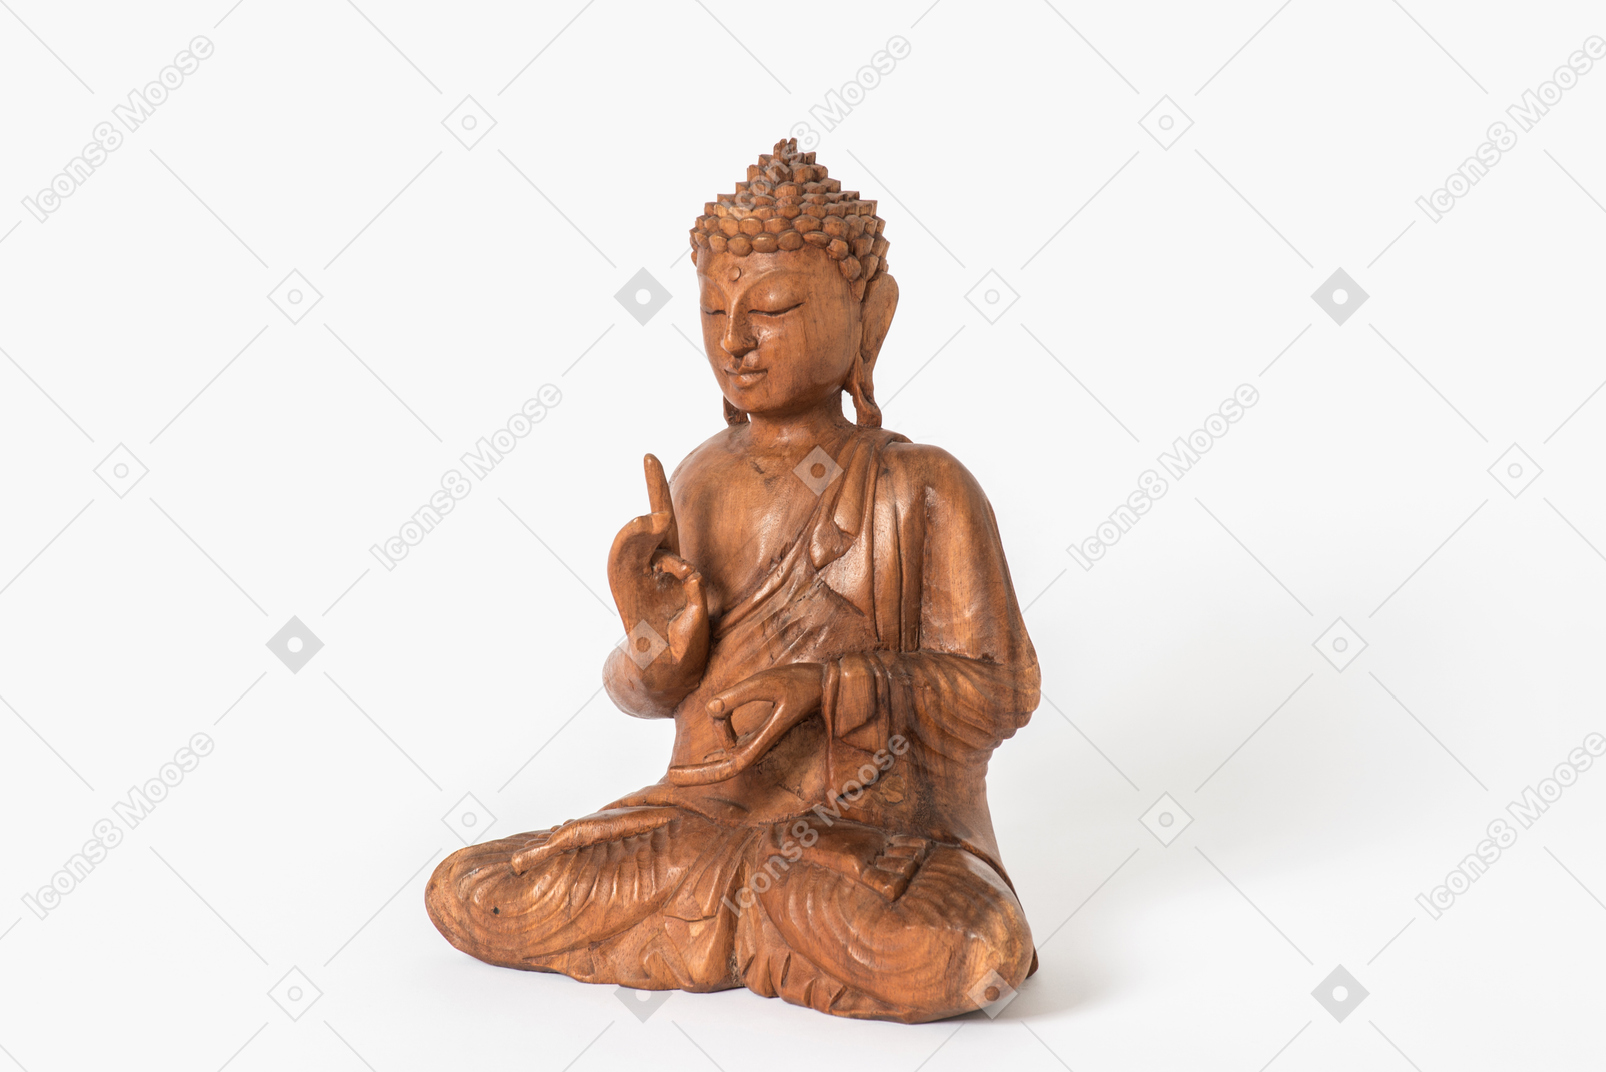 Buddha statue placed half sideways on white background